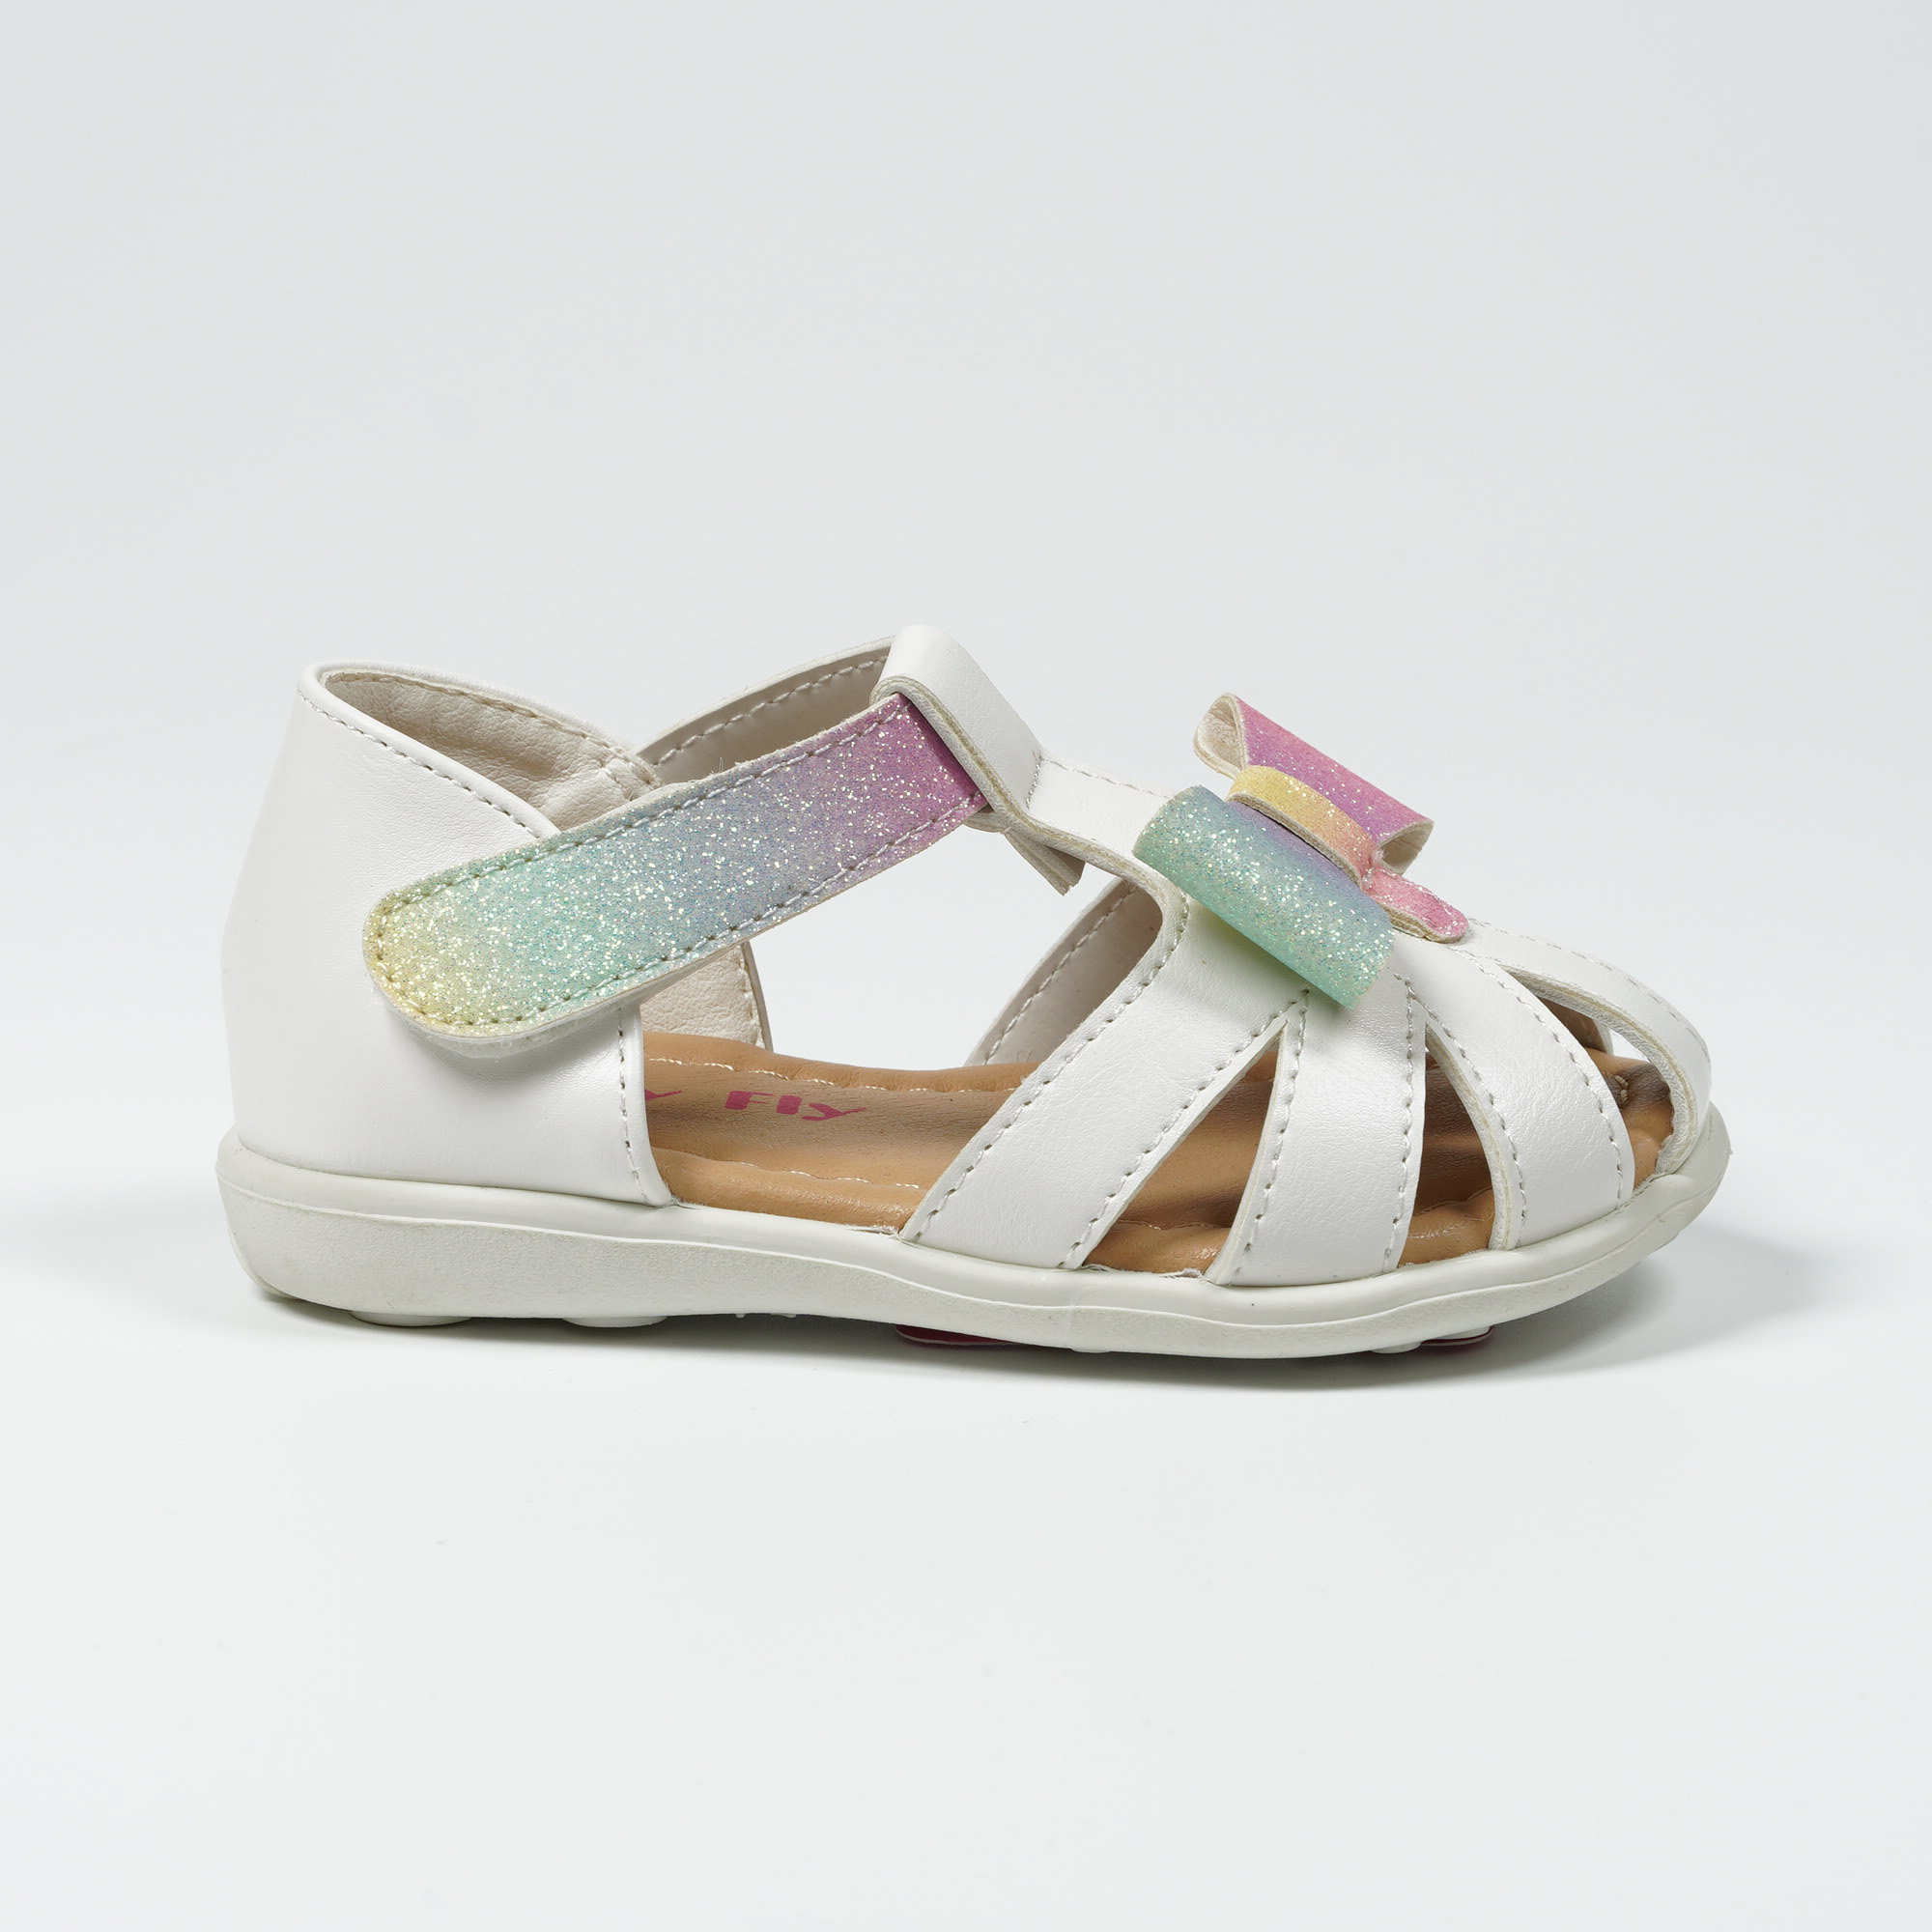 Girls-Outdoor-Glitter-Bow-Sandals-Comfortable-Summer-Beach-Shoes-YDX0390K-5